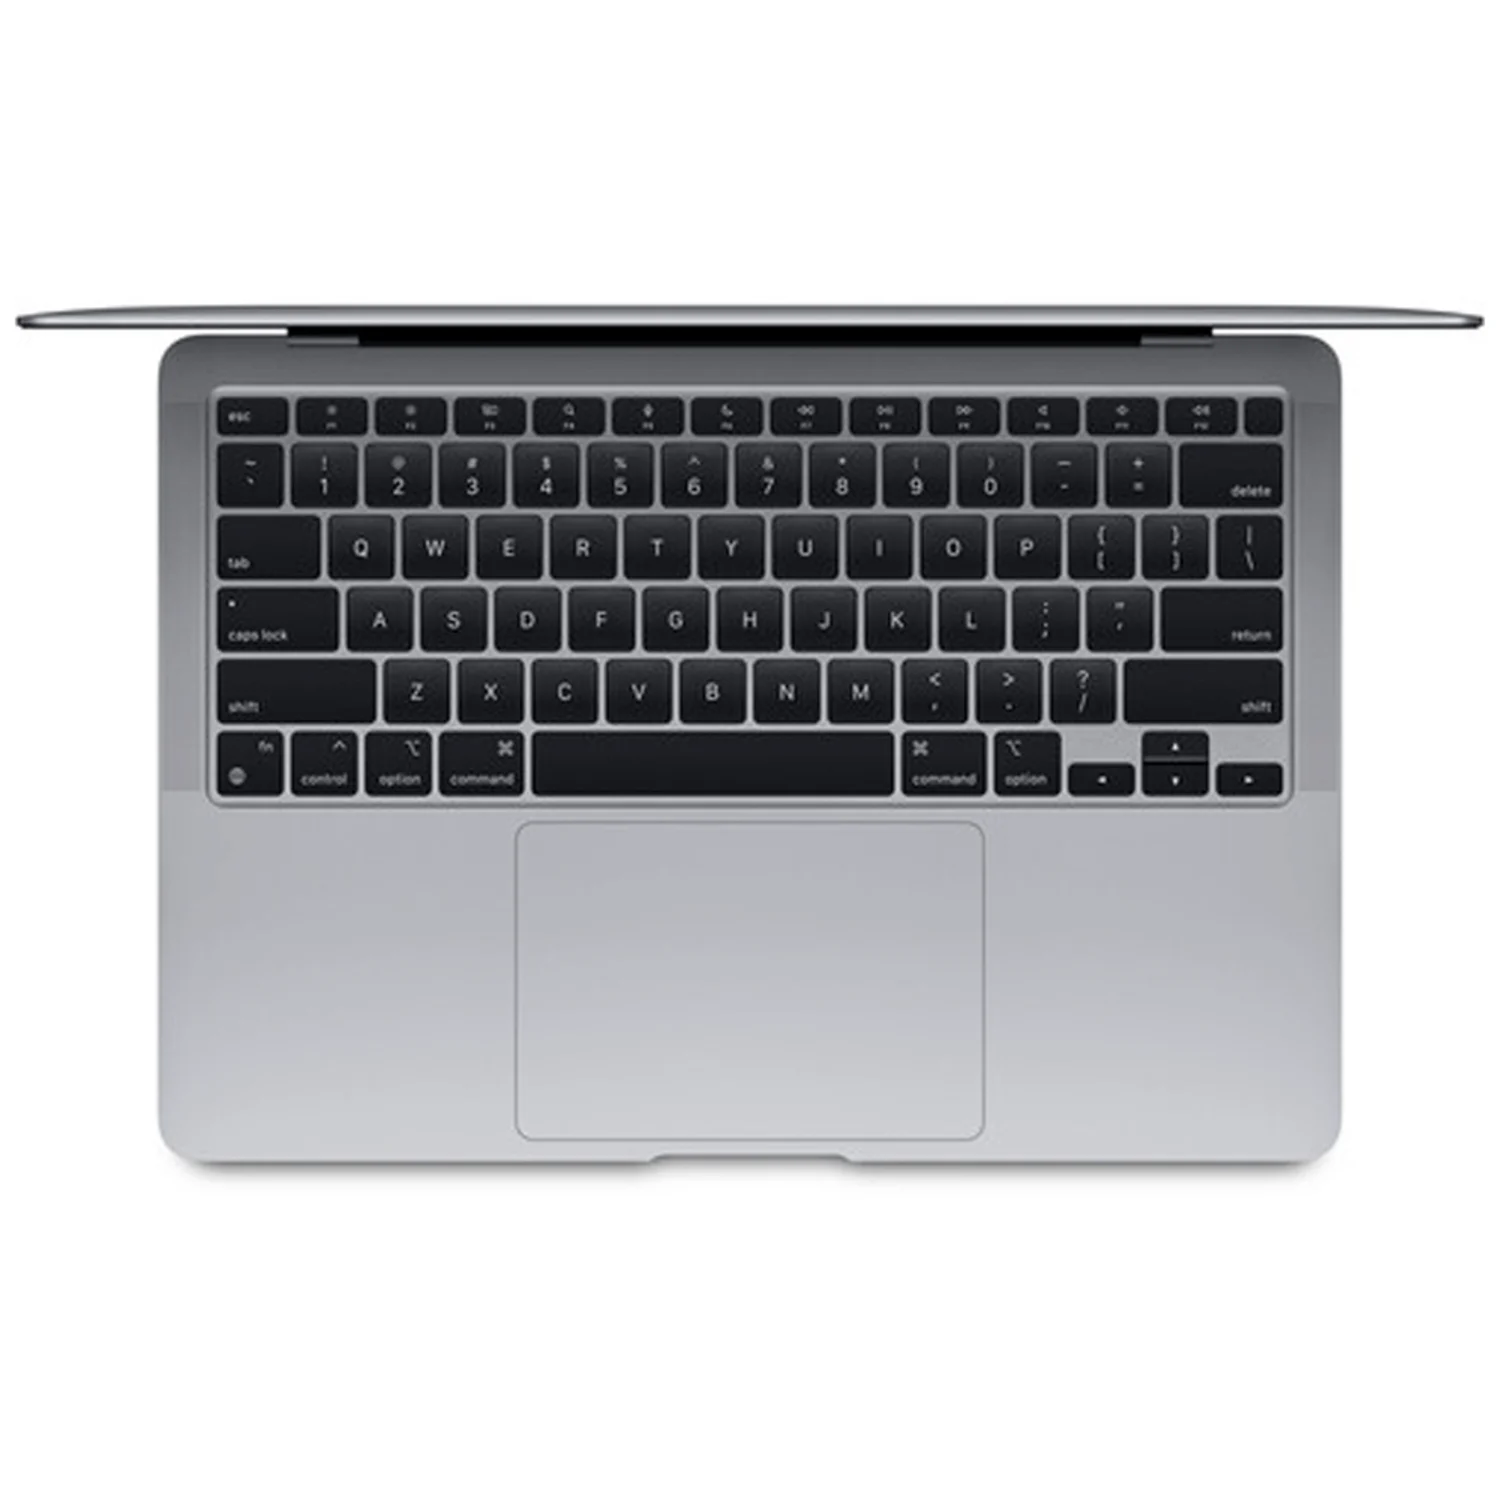 Apple Macbook Air MGN63LL/A M1 / Memória RAM 8GB / SSD 256GB / Tela 13.3" - Space Gray (2020)